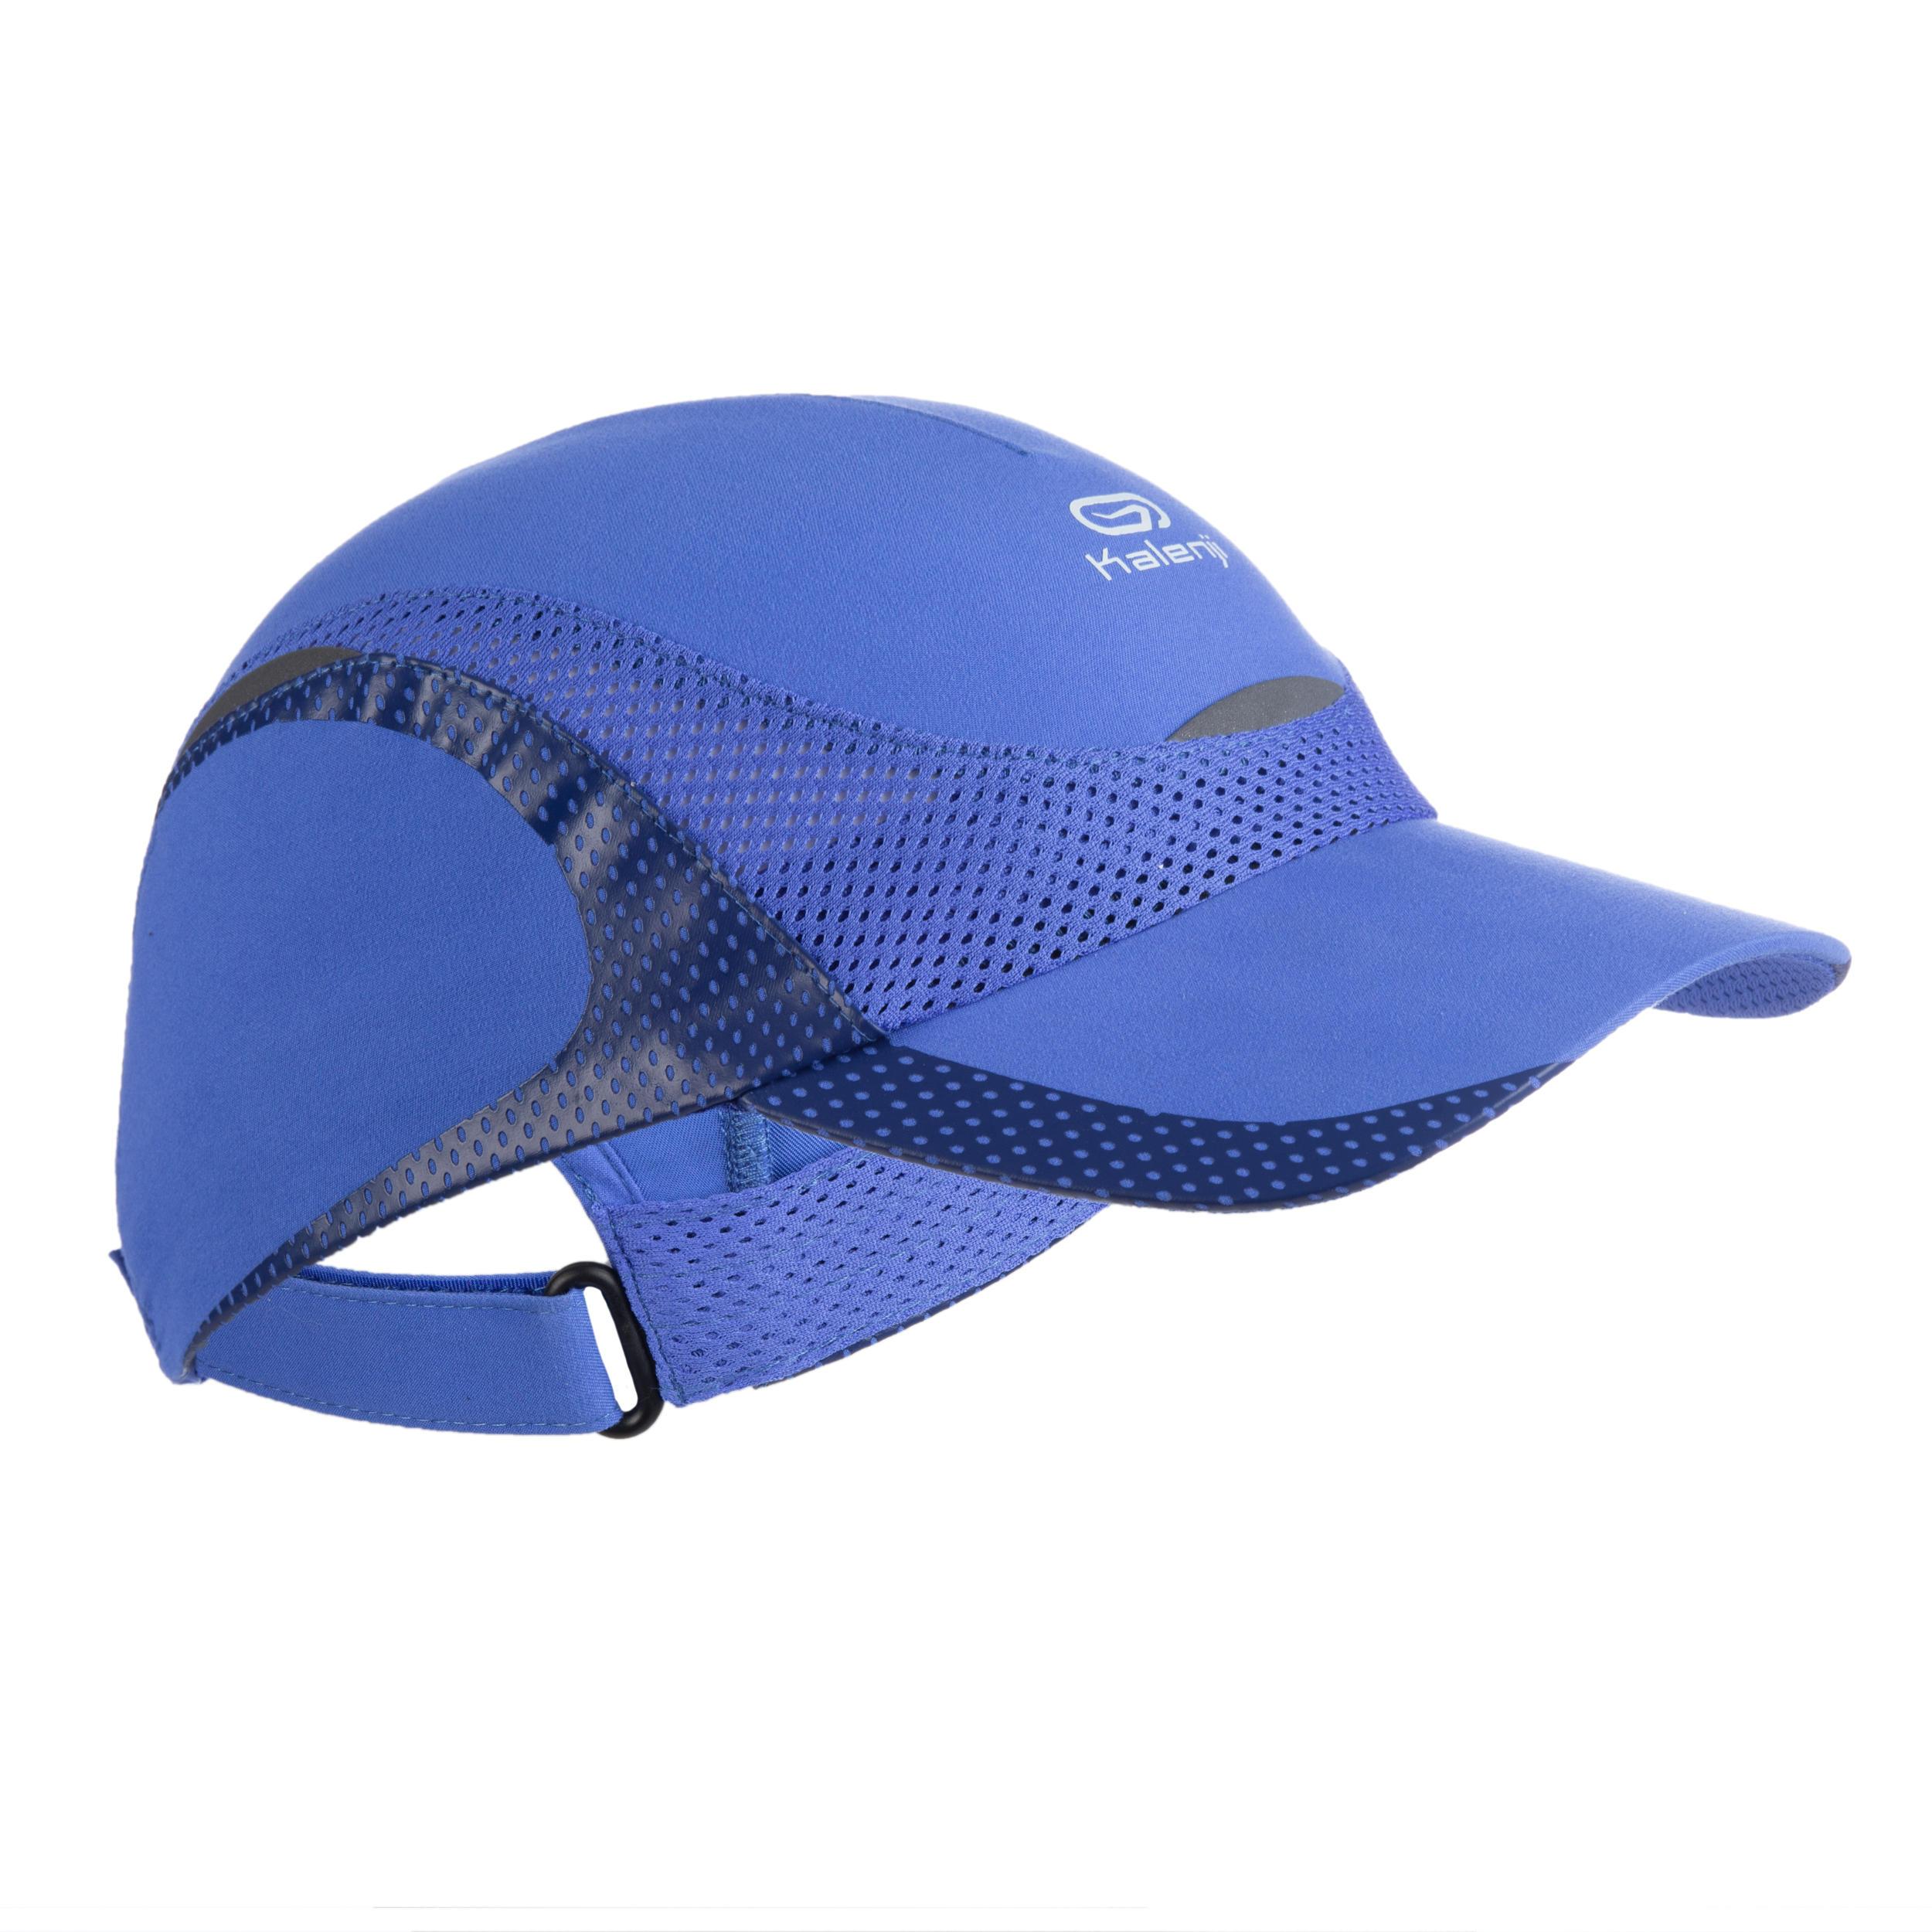 [ด่วน!! โปรโมชั่นมีจำนวนจำกัด] หมวกกรีฑาสำหรับเด็ก (สีฟ้า) สำหรับ วิ่งจ๊อกกิ้ง วิ่งทางวิบาก วิ่งบนลู่‎ วิ่งบนถนน‎ เดินกีฬา เดินแบบนอร์ดิก เดินกีฬา